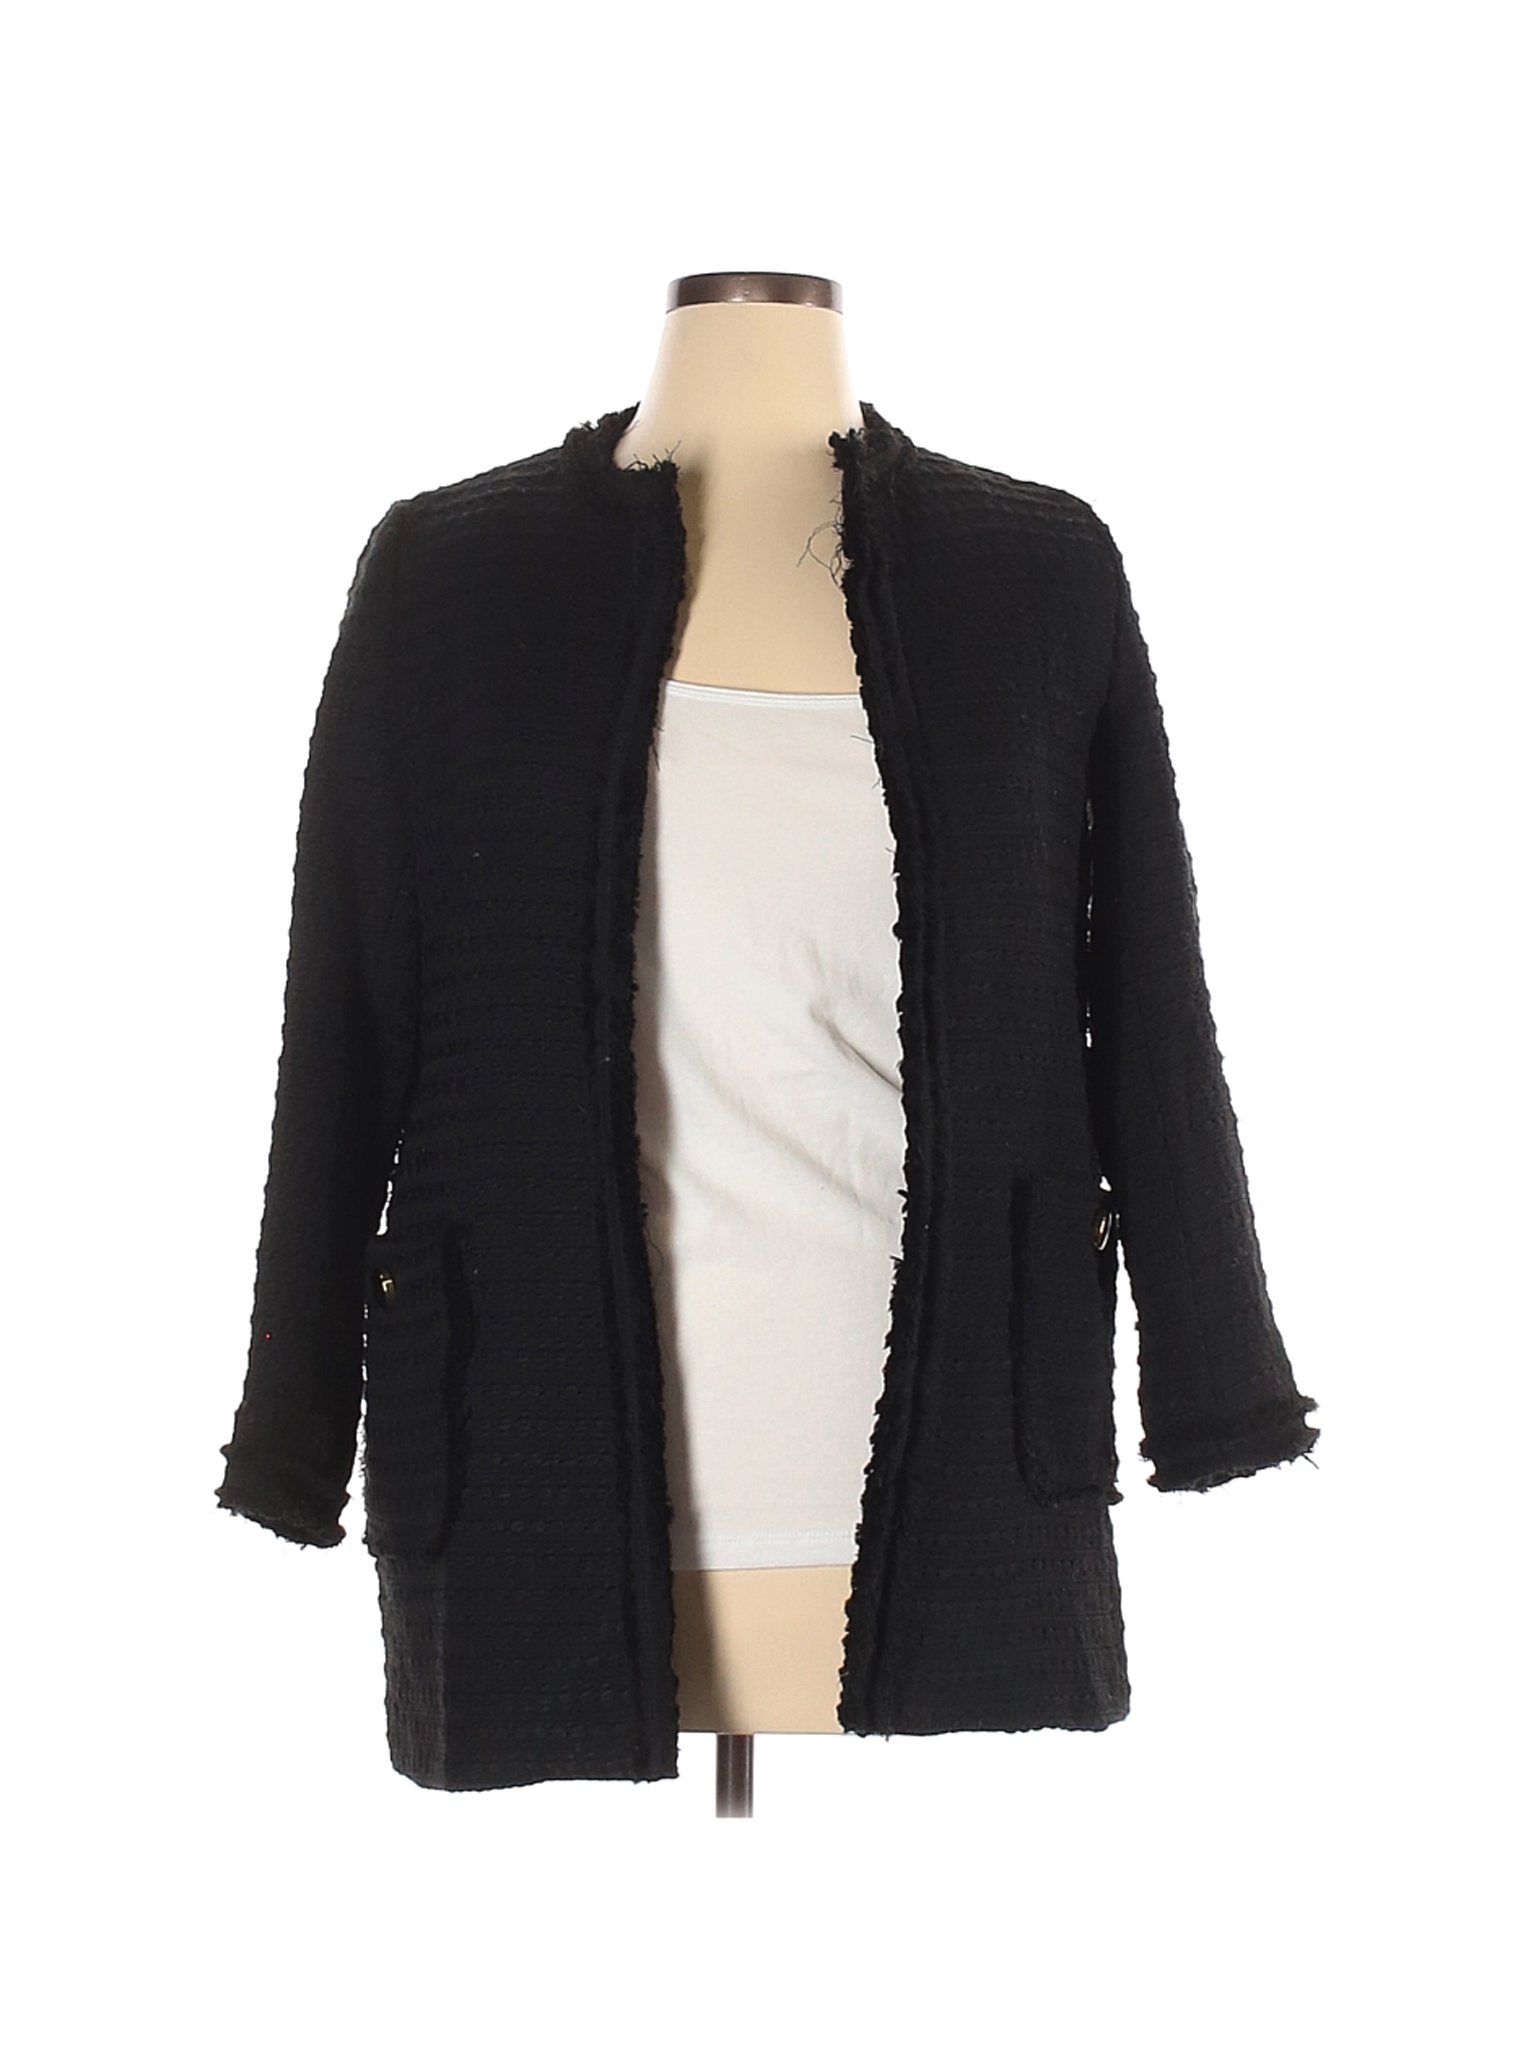 Zara Basic Women Black Jacket XL | eBay